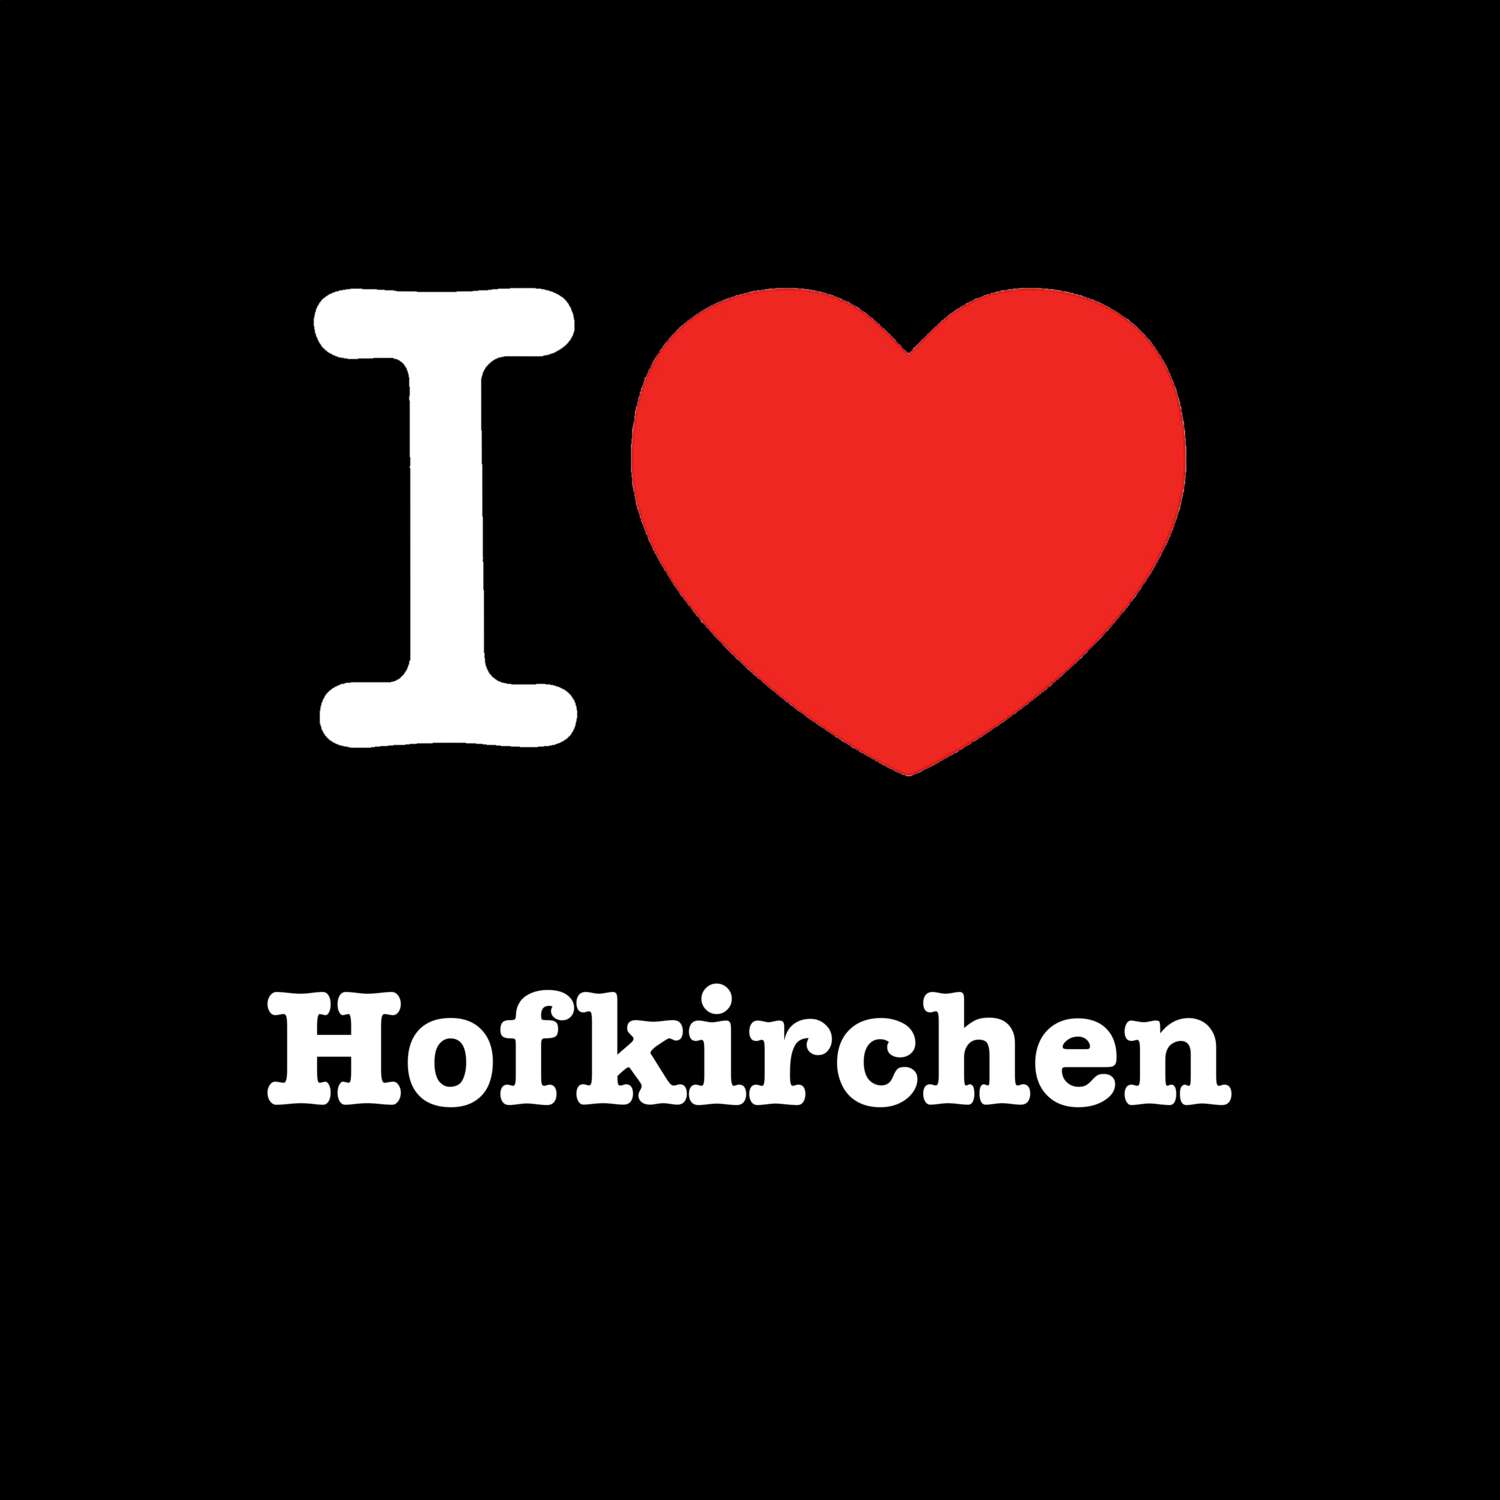 Hofkirchen T-Shirt »I love«